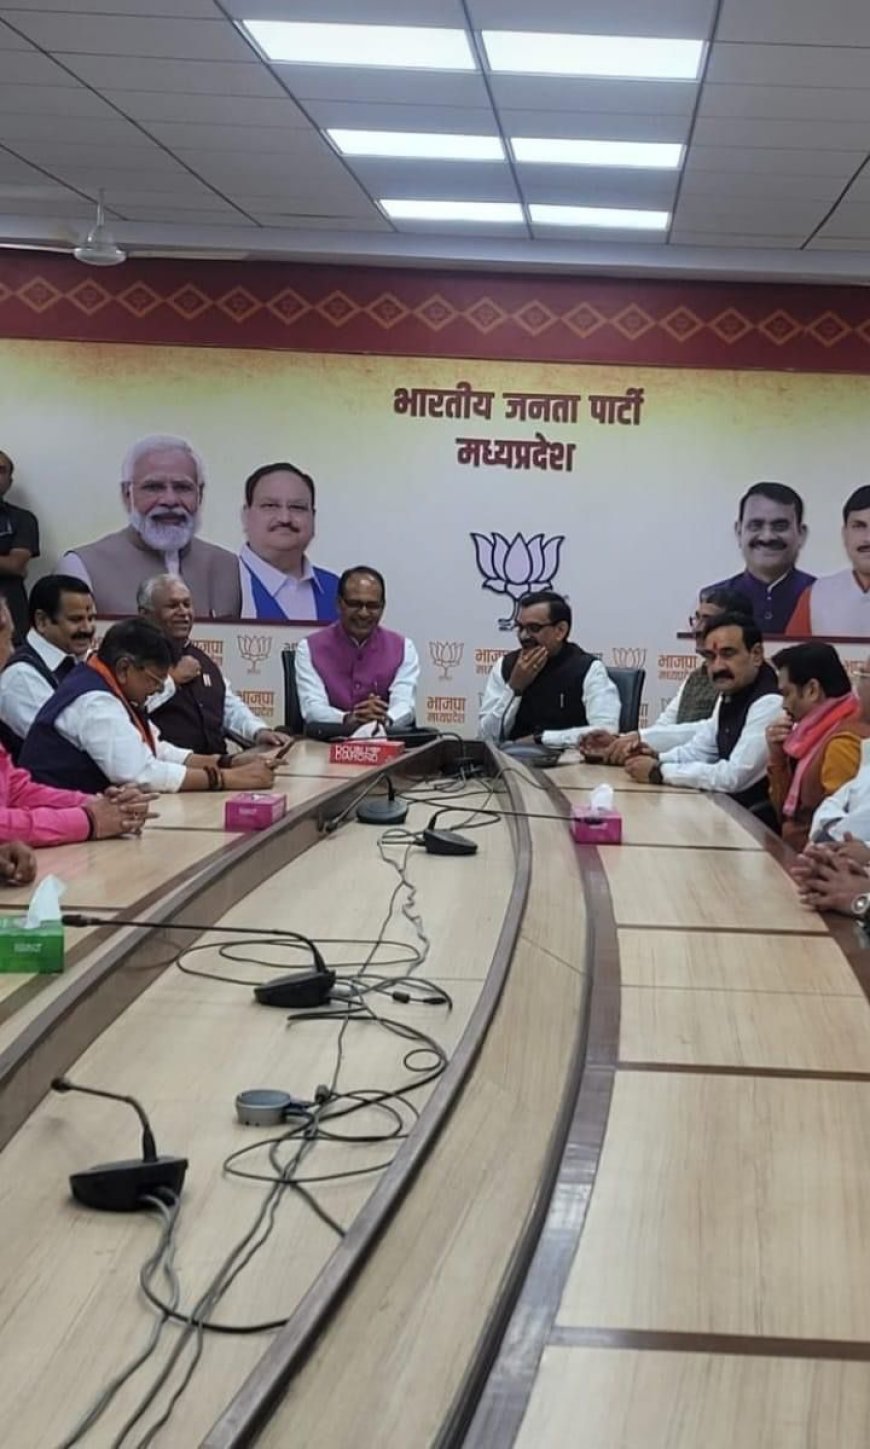 कांग्रेस के दिग्गज नेता रहे सुरेश पचौरी ने अपने साथियों सहित भाजपा की सदस्यता ली